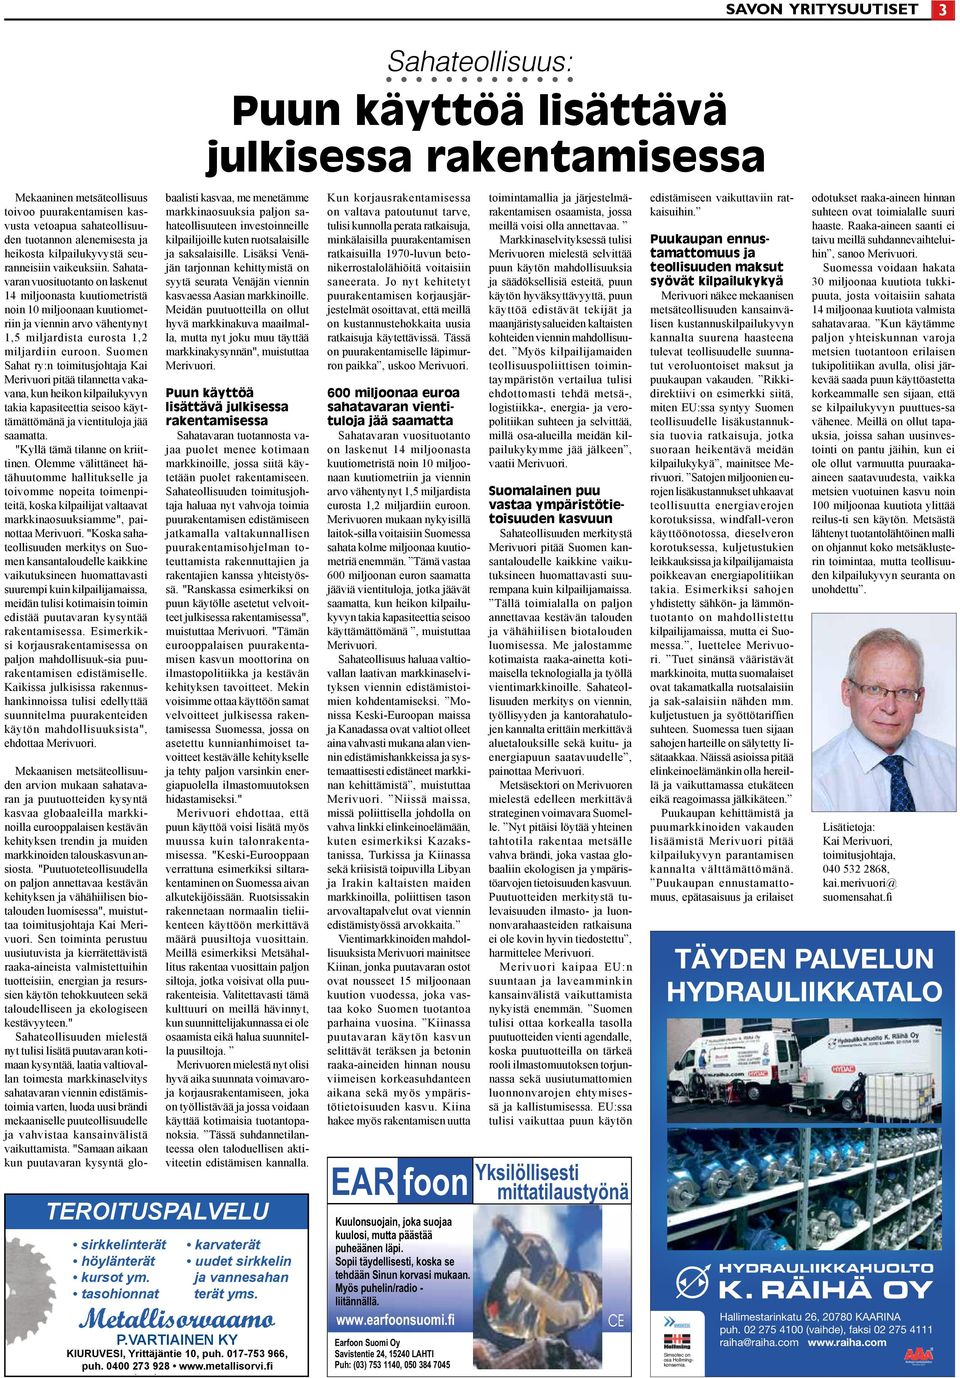 Suomen Sahat ry:n toimitusjohtaja Kai Merivuori pitää tilannetta vakavana, kun heikon kilpailukyvyn takia kapasiteettia seisoo käyttämättömänä ja vientituloja jää saamatta.